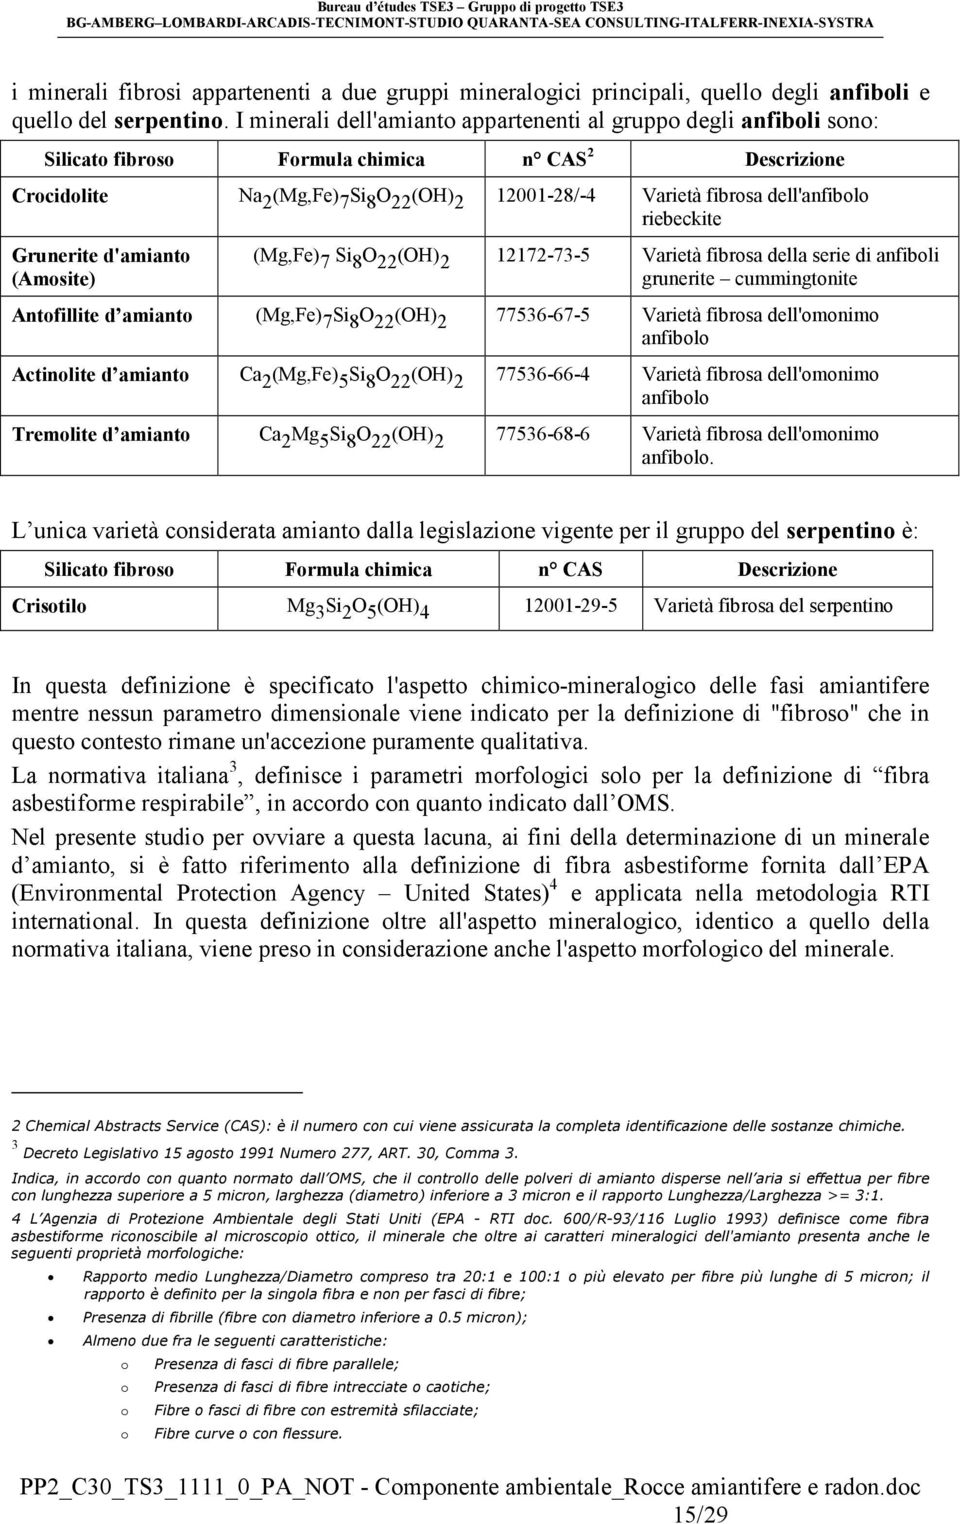 dell'anfibolo riebeckite Grunerite d'amianto (Amosite) (Mg,Fe) 7 Si 8 O 22 (OH) 2 12172-73-5 Varietà fibrosa della serie di anfiboli grunerite cummingtonite Antofillite d amianto (Mg,Fe) 7 Si 8 O 22